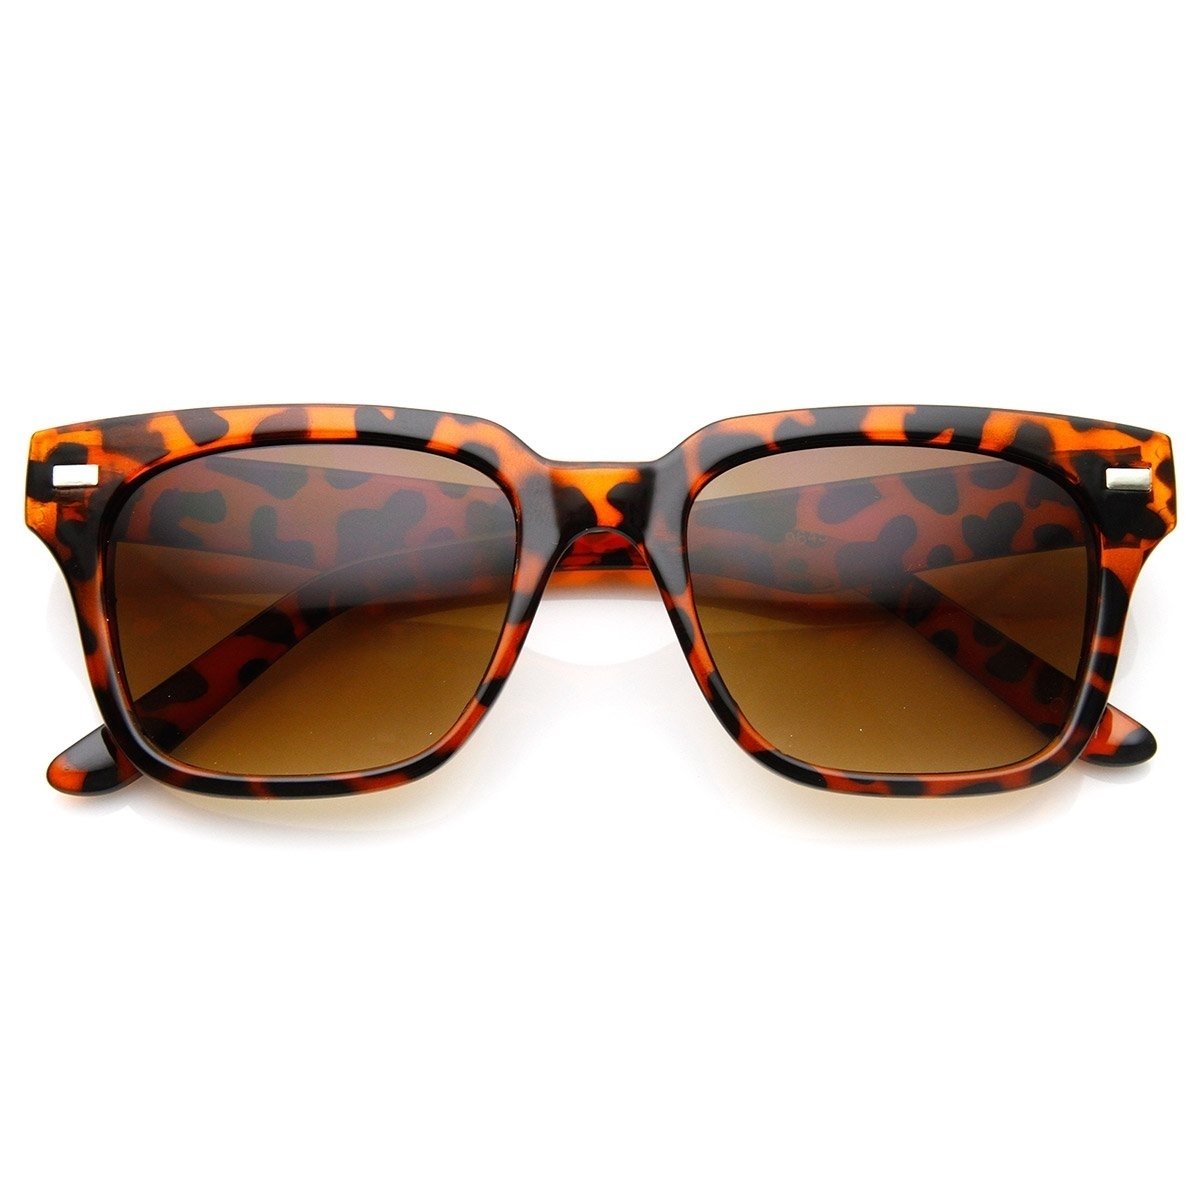 Casual Horned Rim Square Frame Retro Horn Rimmed Sunglasses - Tortoise Brown